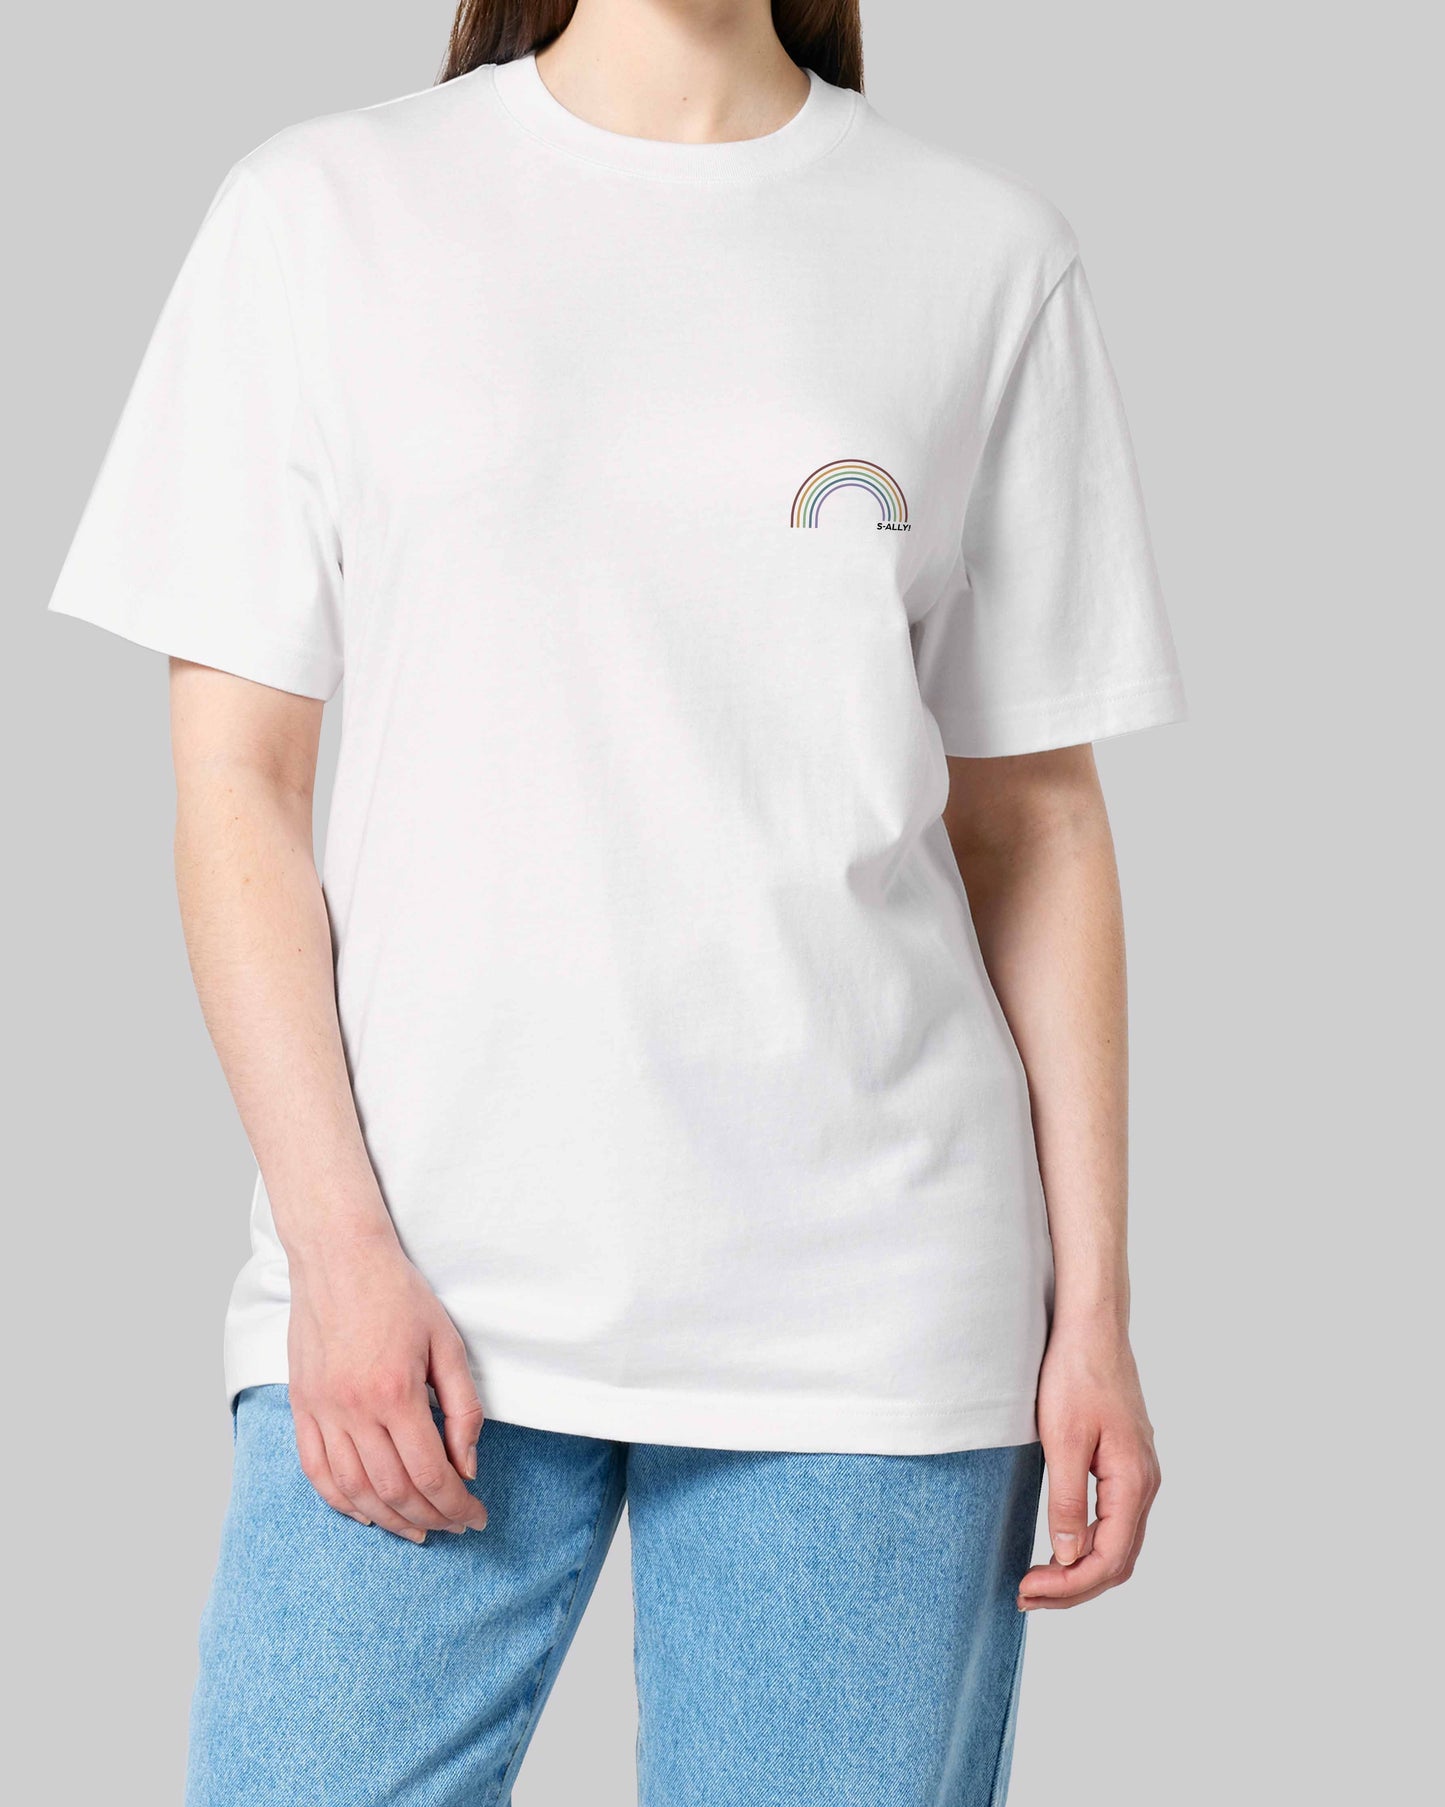 unisex Organic Shirt 2.0 "s-ally Regenbogen" in 2 verschiedenen Farben und insgesamt 6 verschiedenen Varianten